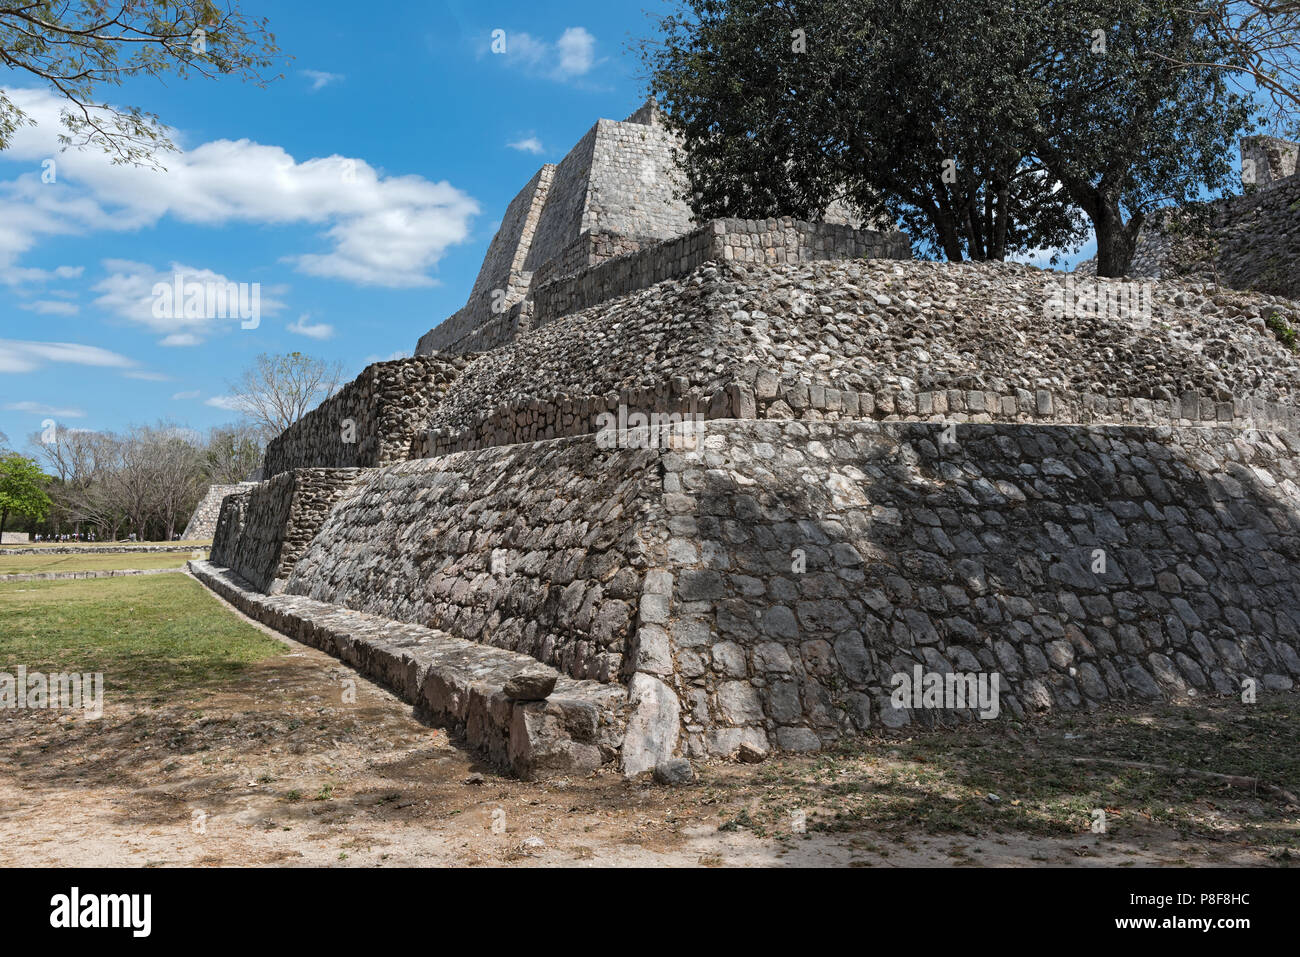 Die Ruinen der antiken Stadt Edzna in der Nähe von Campeche, Mexiko. Stockfoto